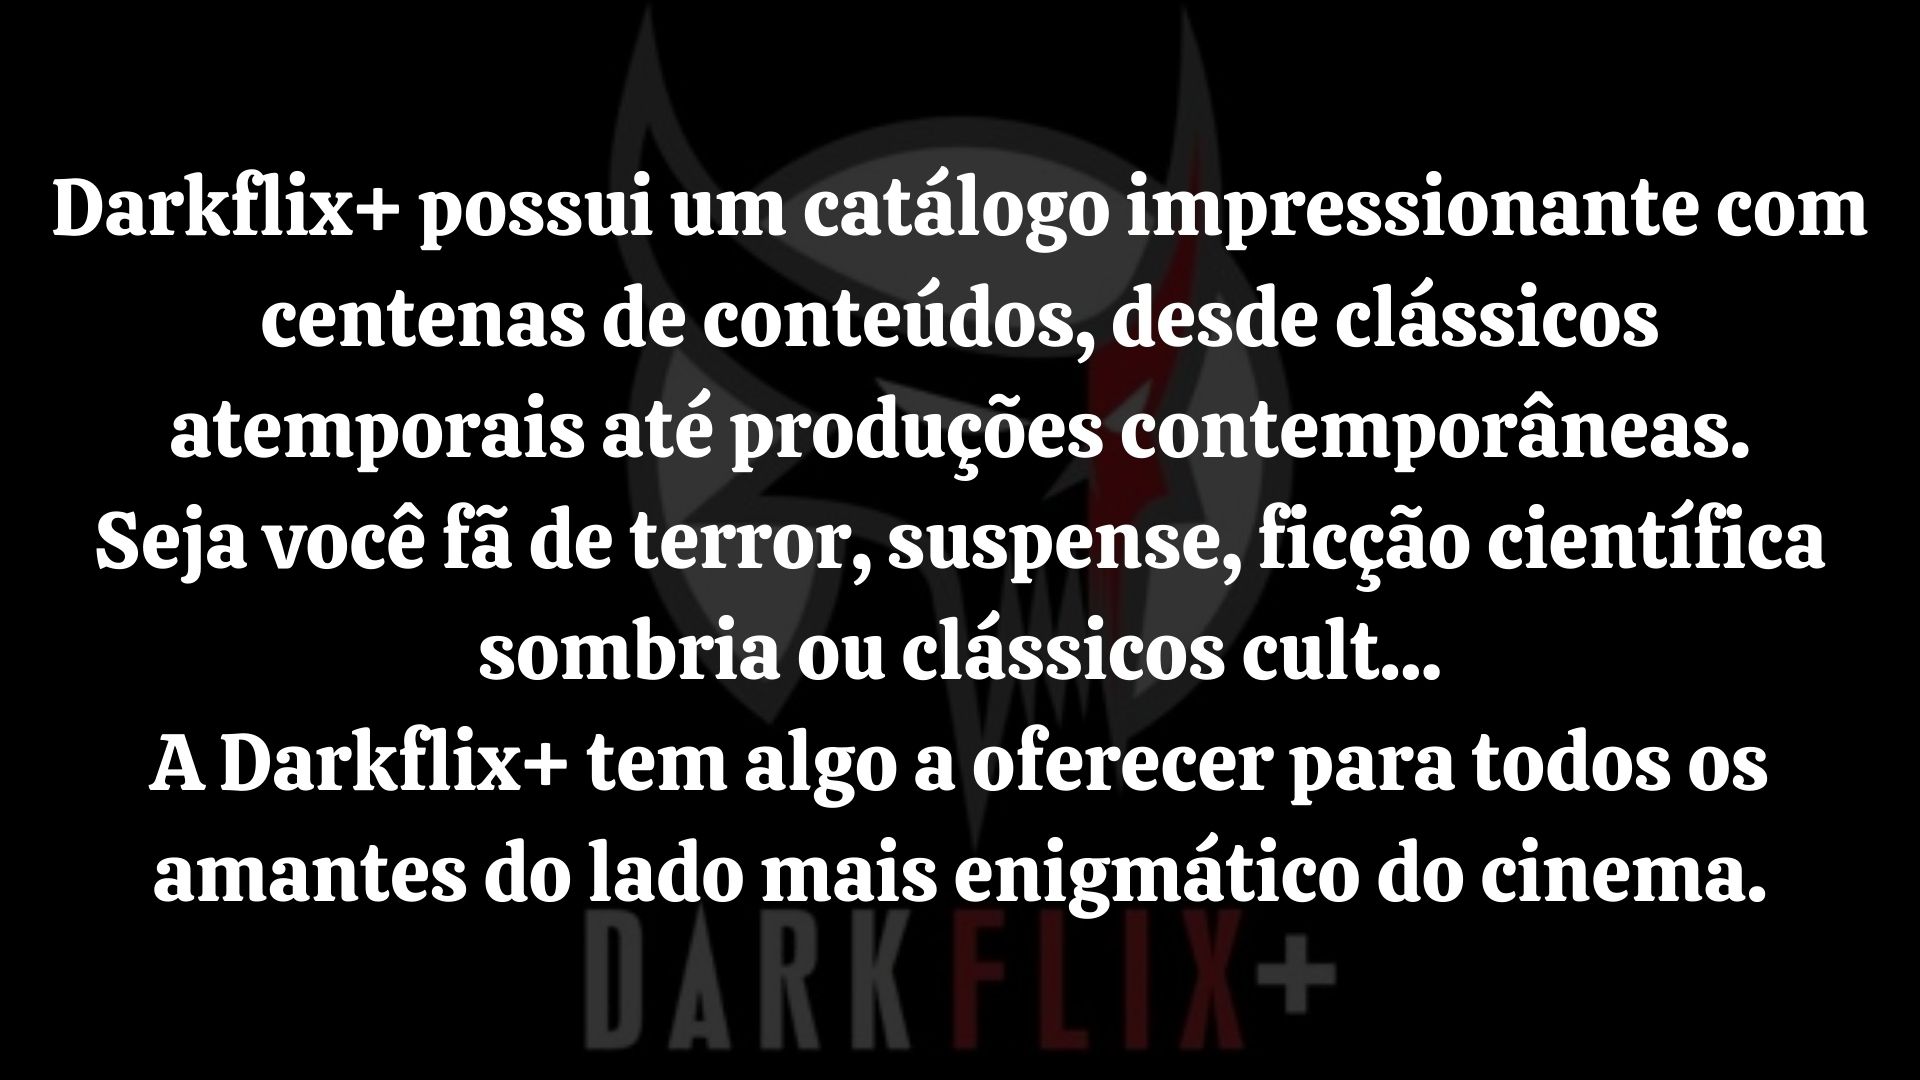 Darkflix3